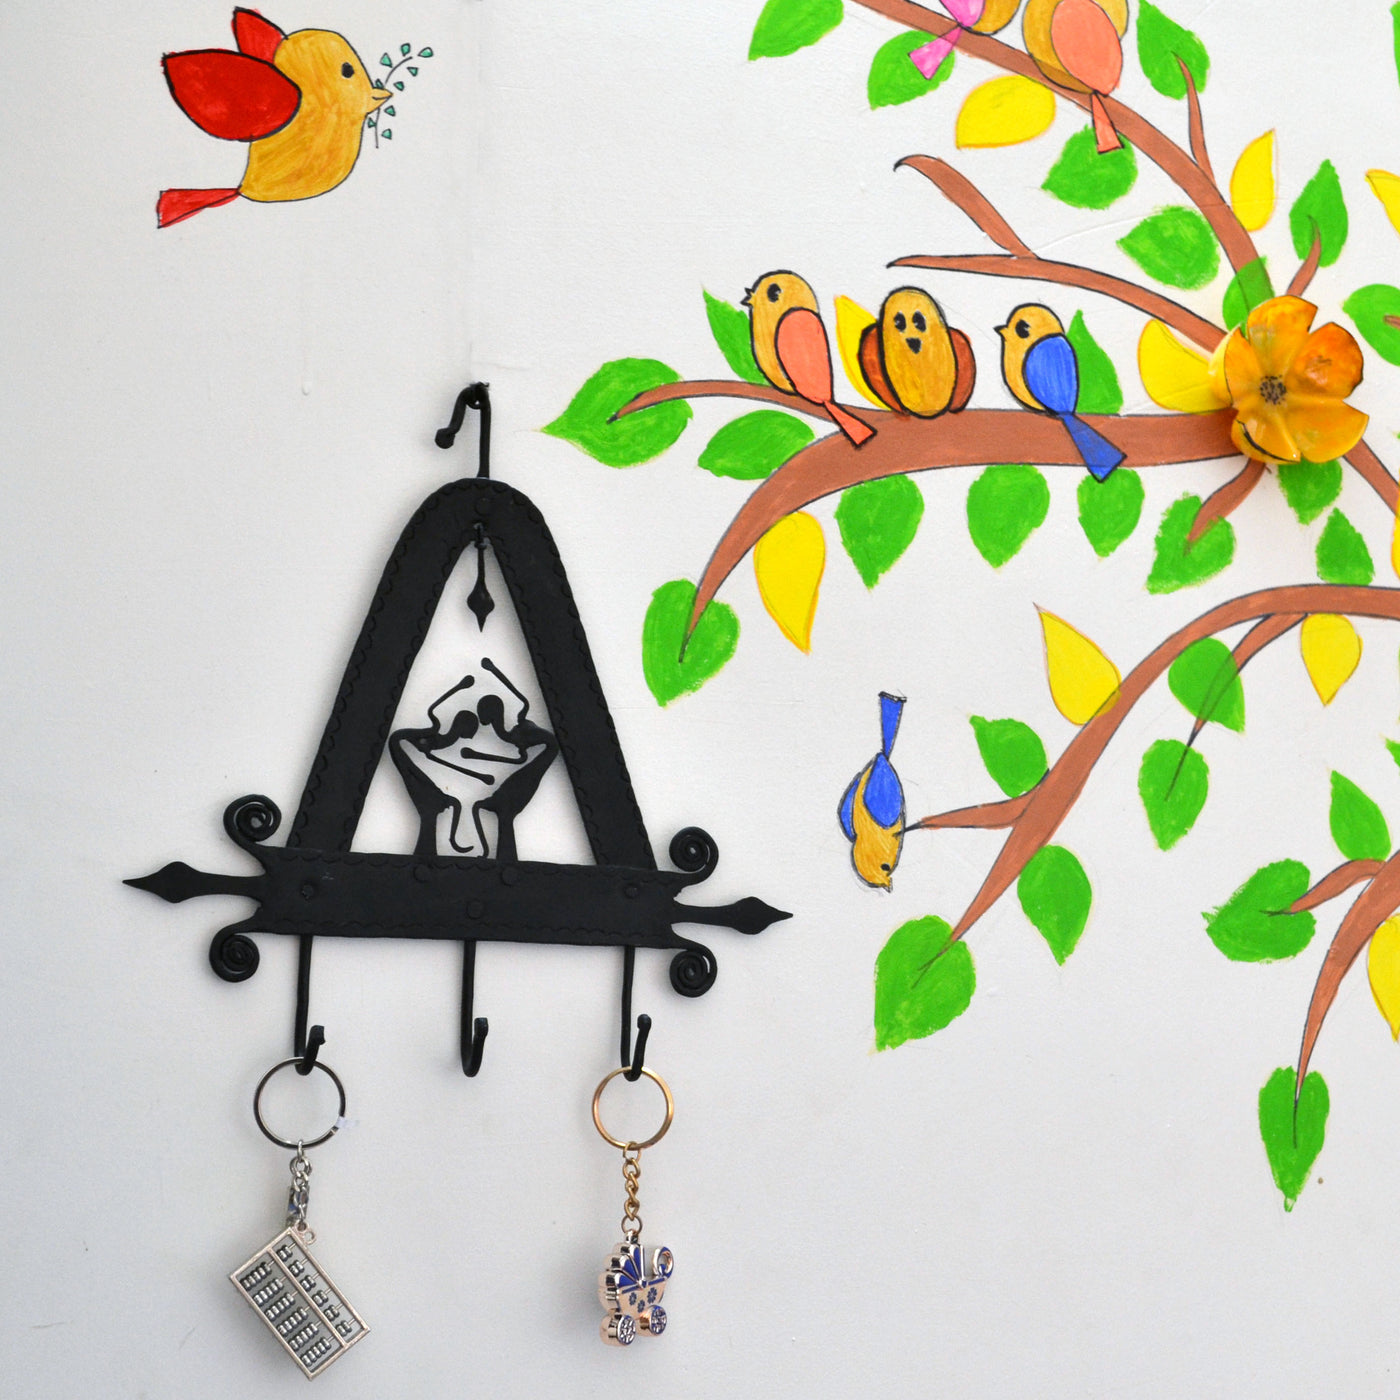 Chinhhari arts Wrought Iron triangle 3 hook keychain holde - Chinhhari Arts store